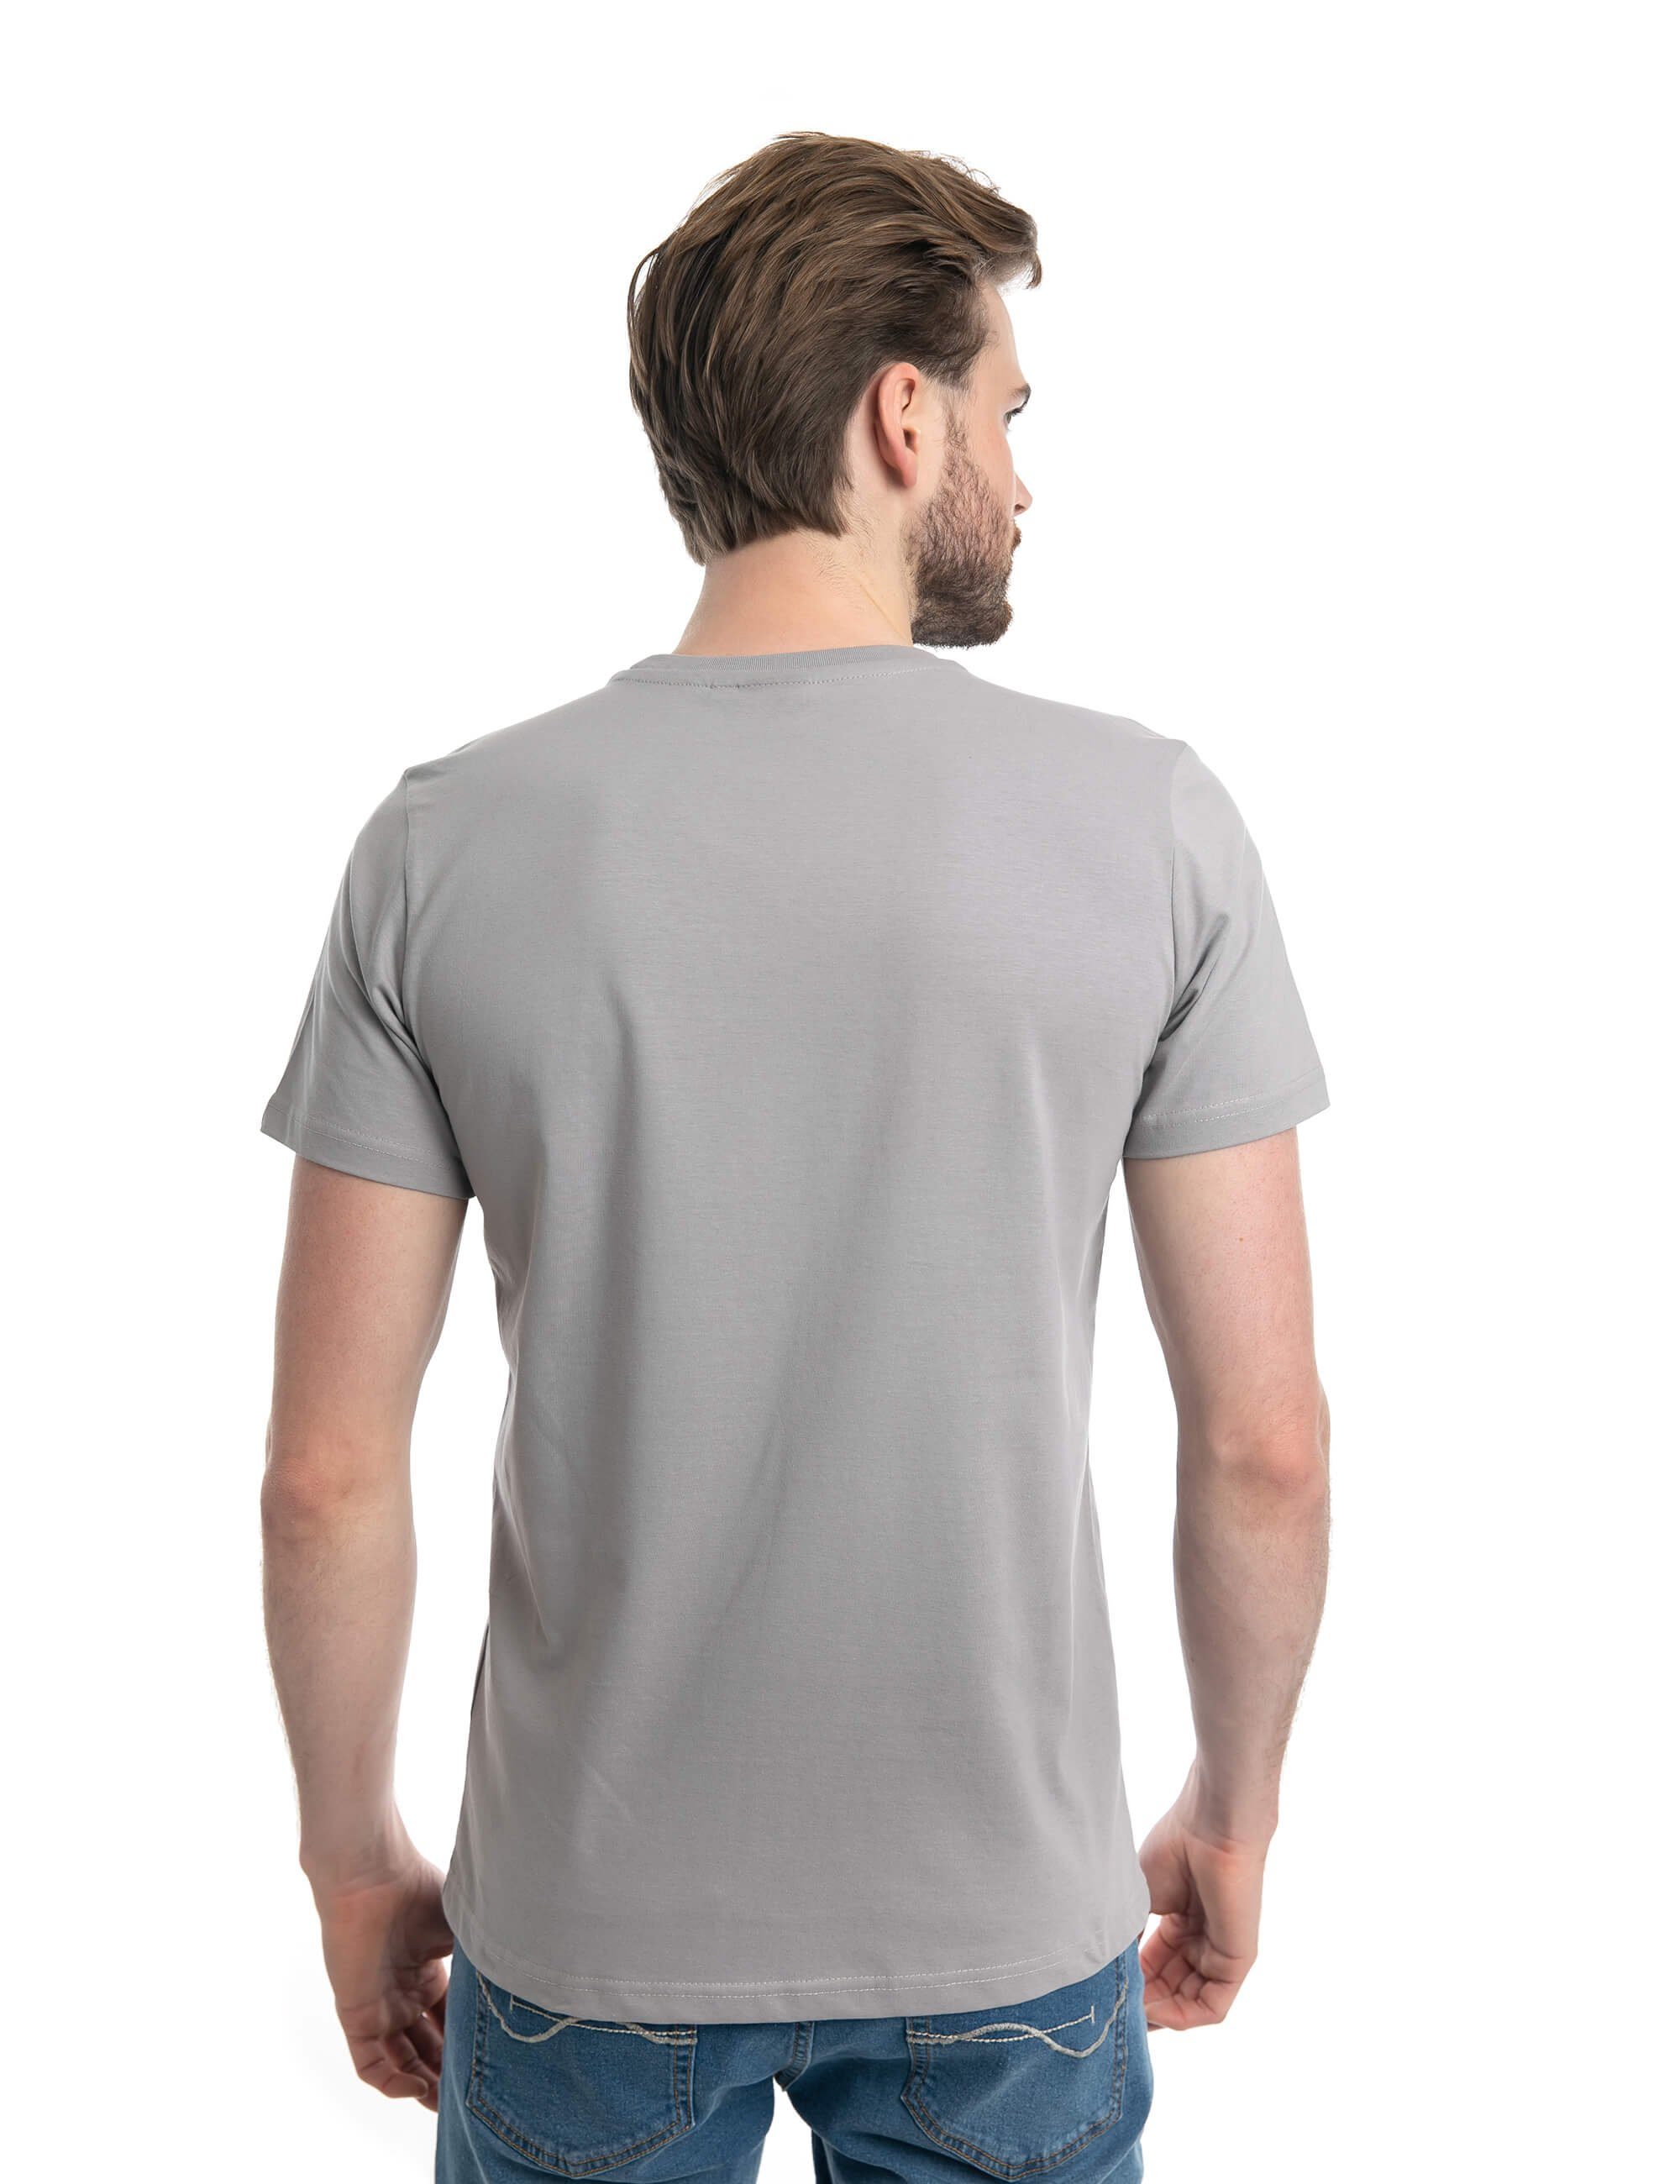 Logo-Aufdruck, Roadsign Rundhalsausschnitt 100 BCI-Baumwolle % ROADSIGN Grau T-Shirt (1-tlg) mit Lifestyle australia &